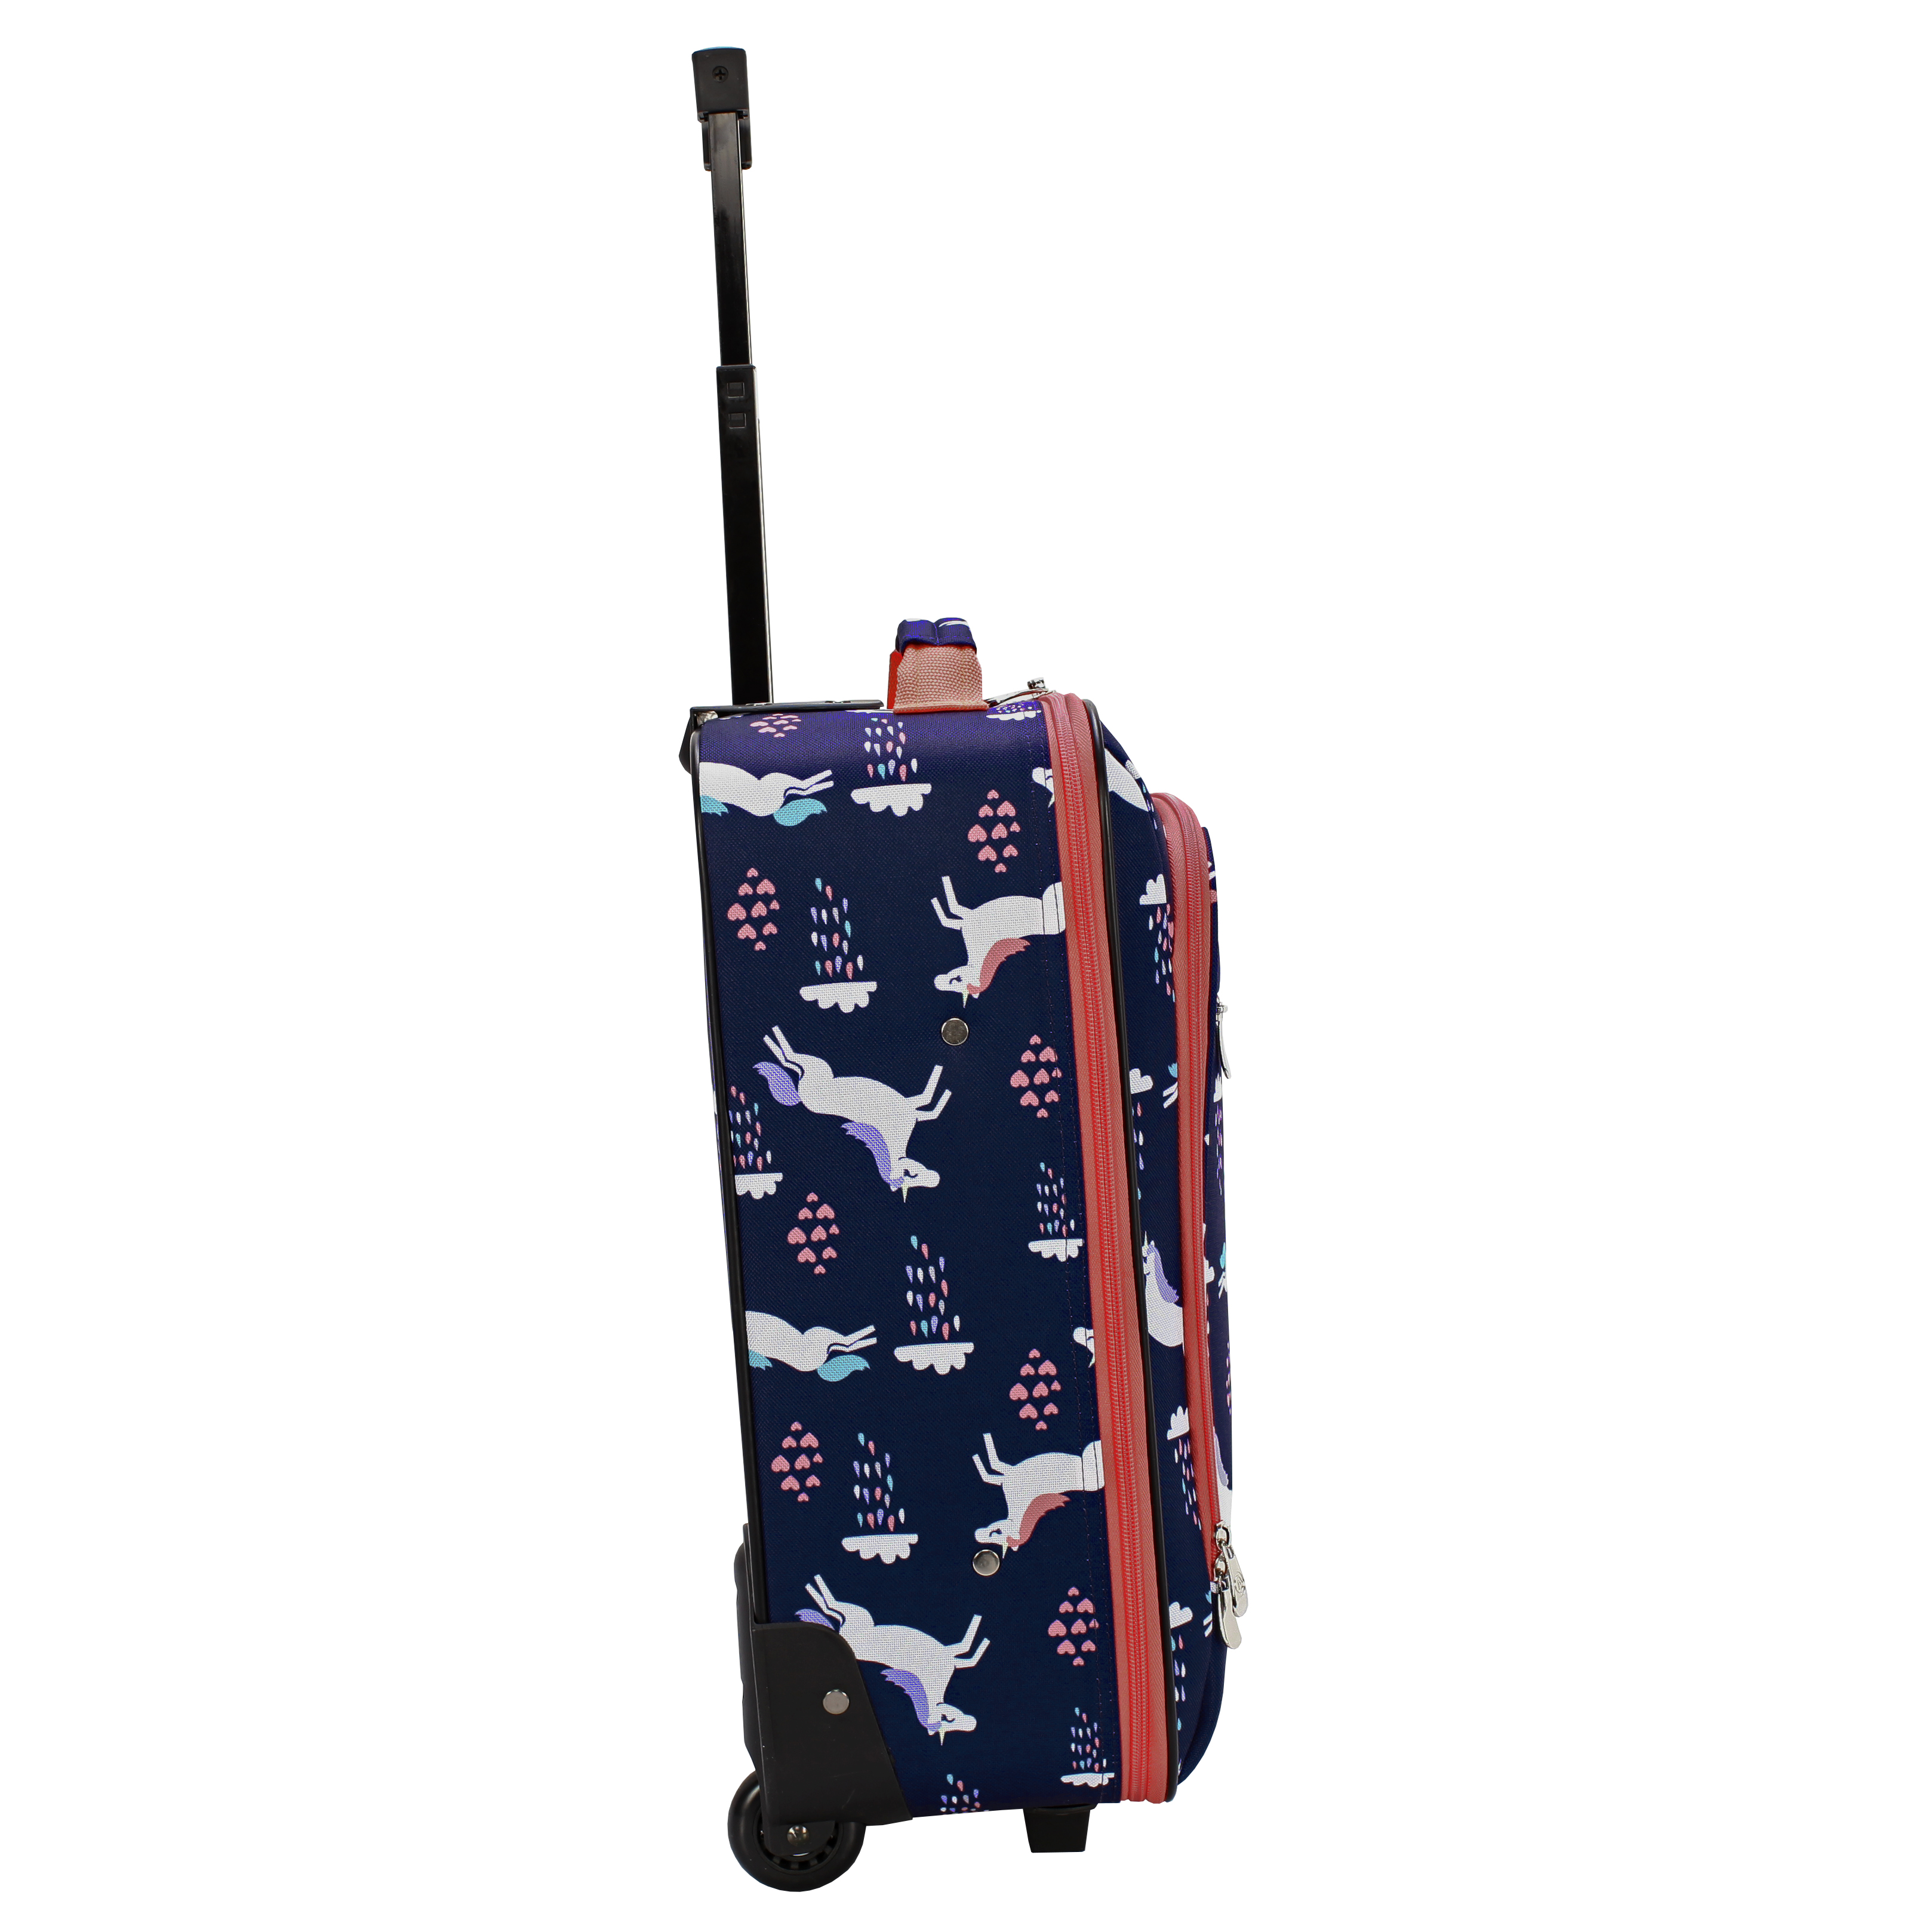 Protege 18" Kids Pilot Case Carry-on Luggage Suitcase, Unicorn - image 2 of 9